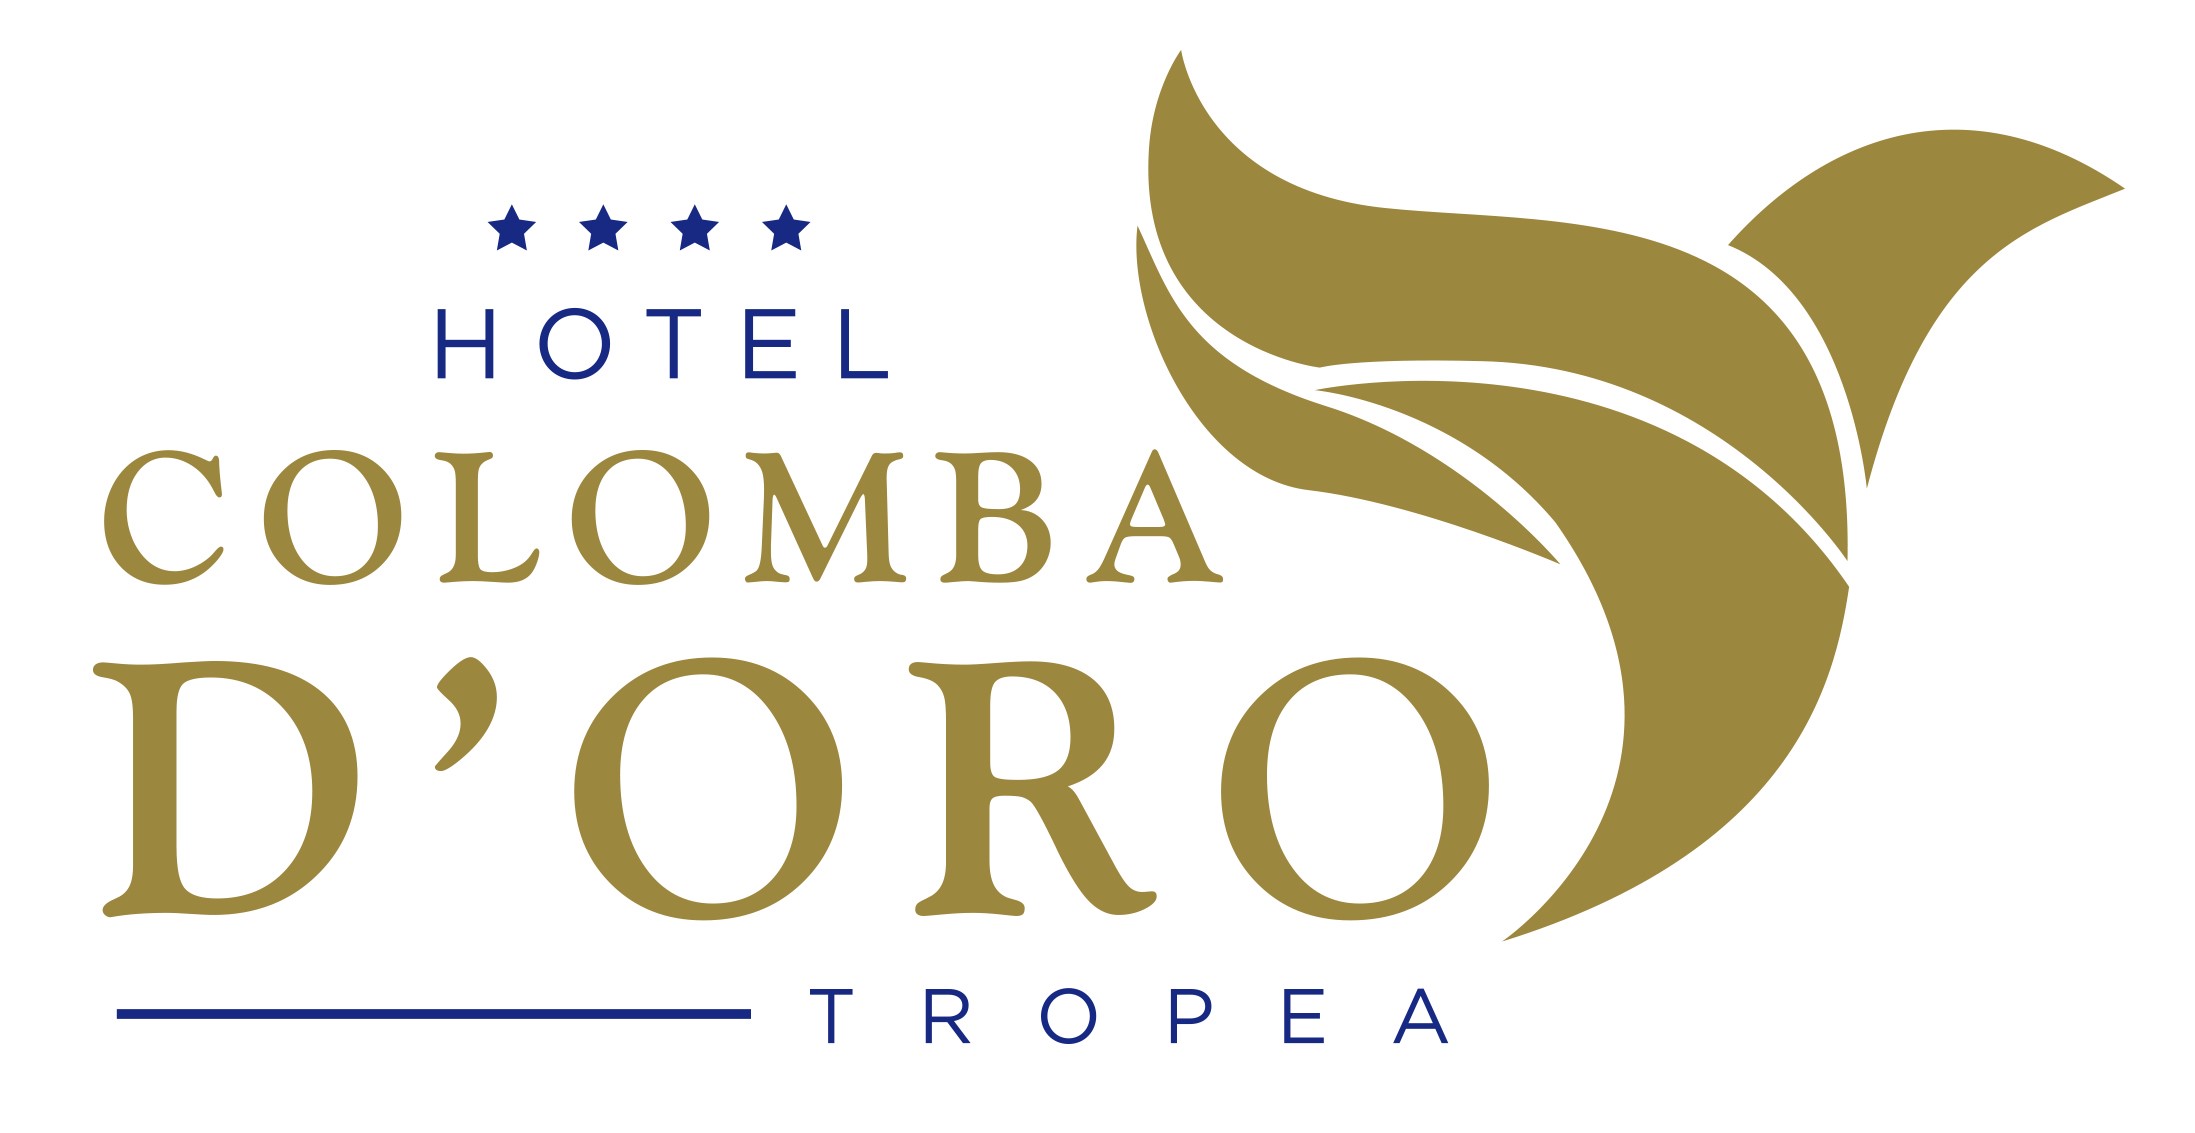 LOGO HOTEL COLOMBA DORO TROPEA